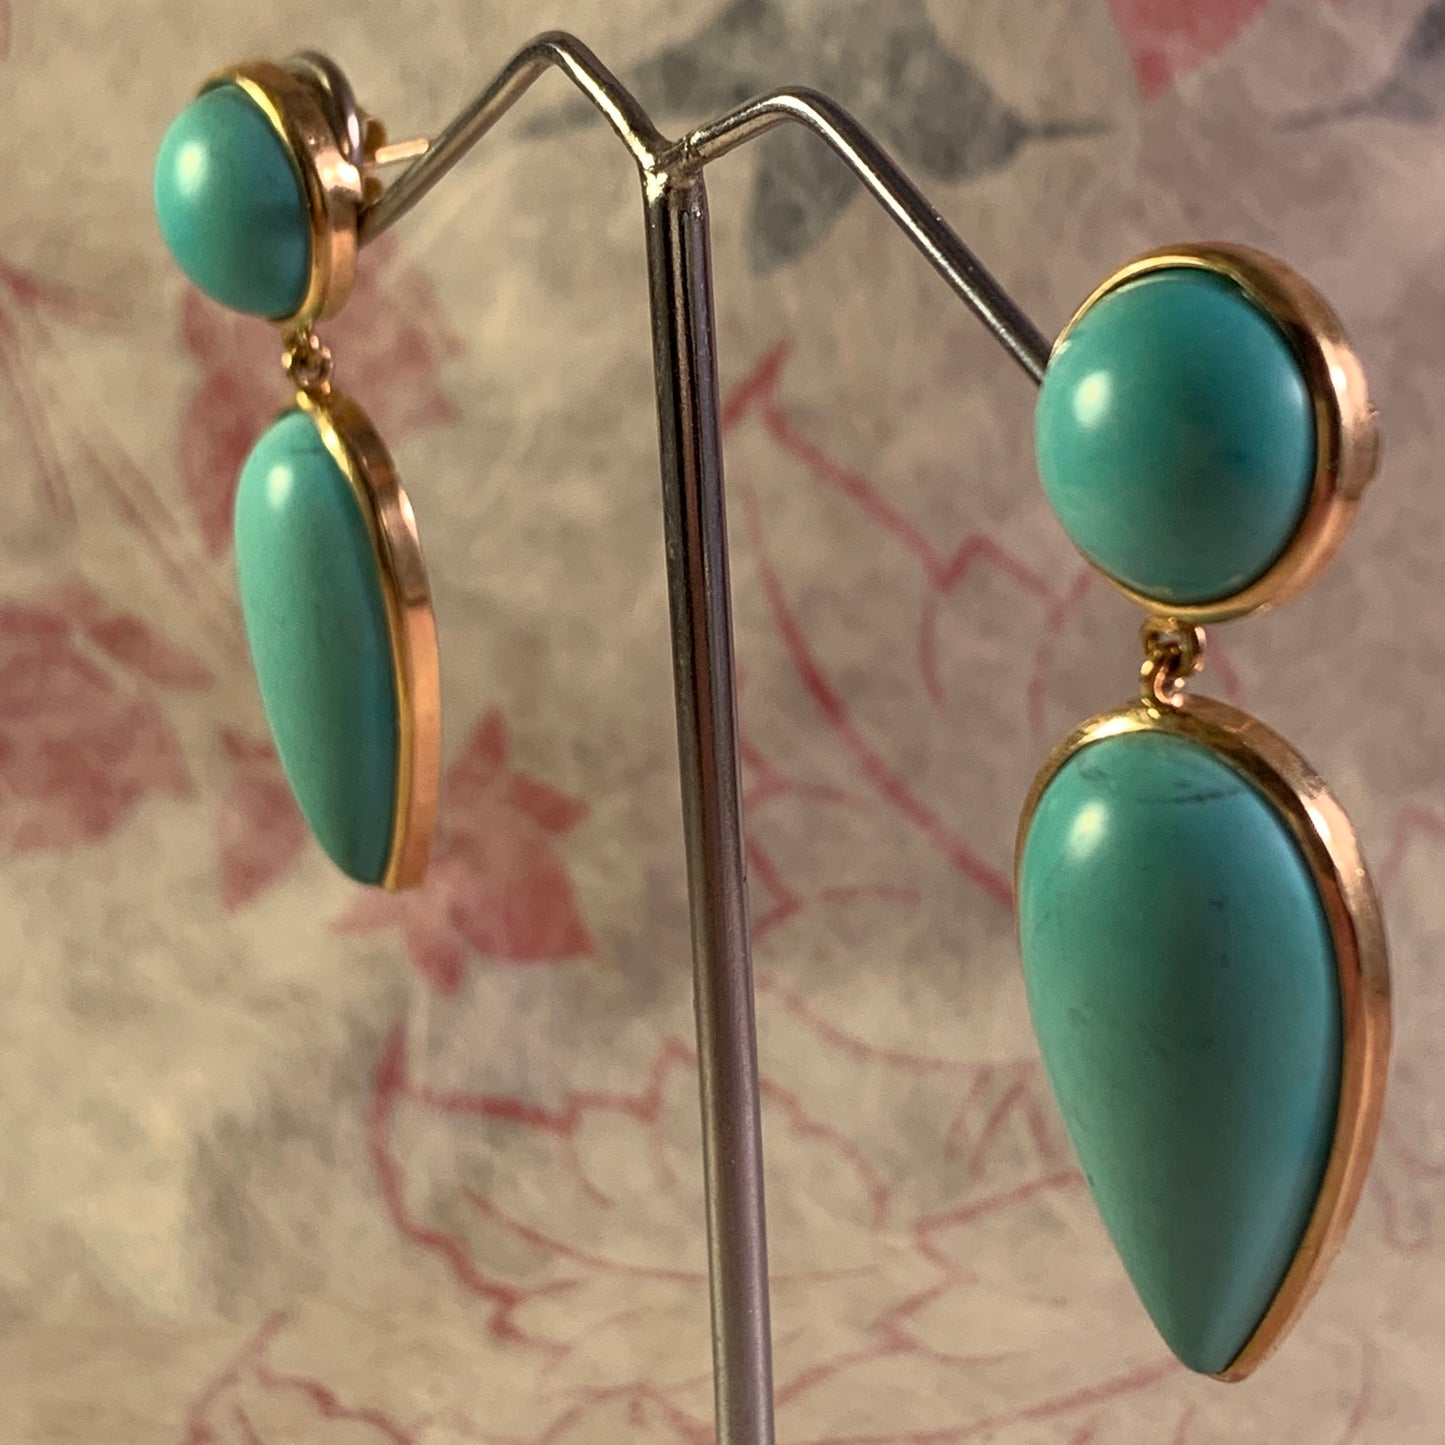 Vintage modern turquoise earrings